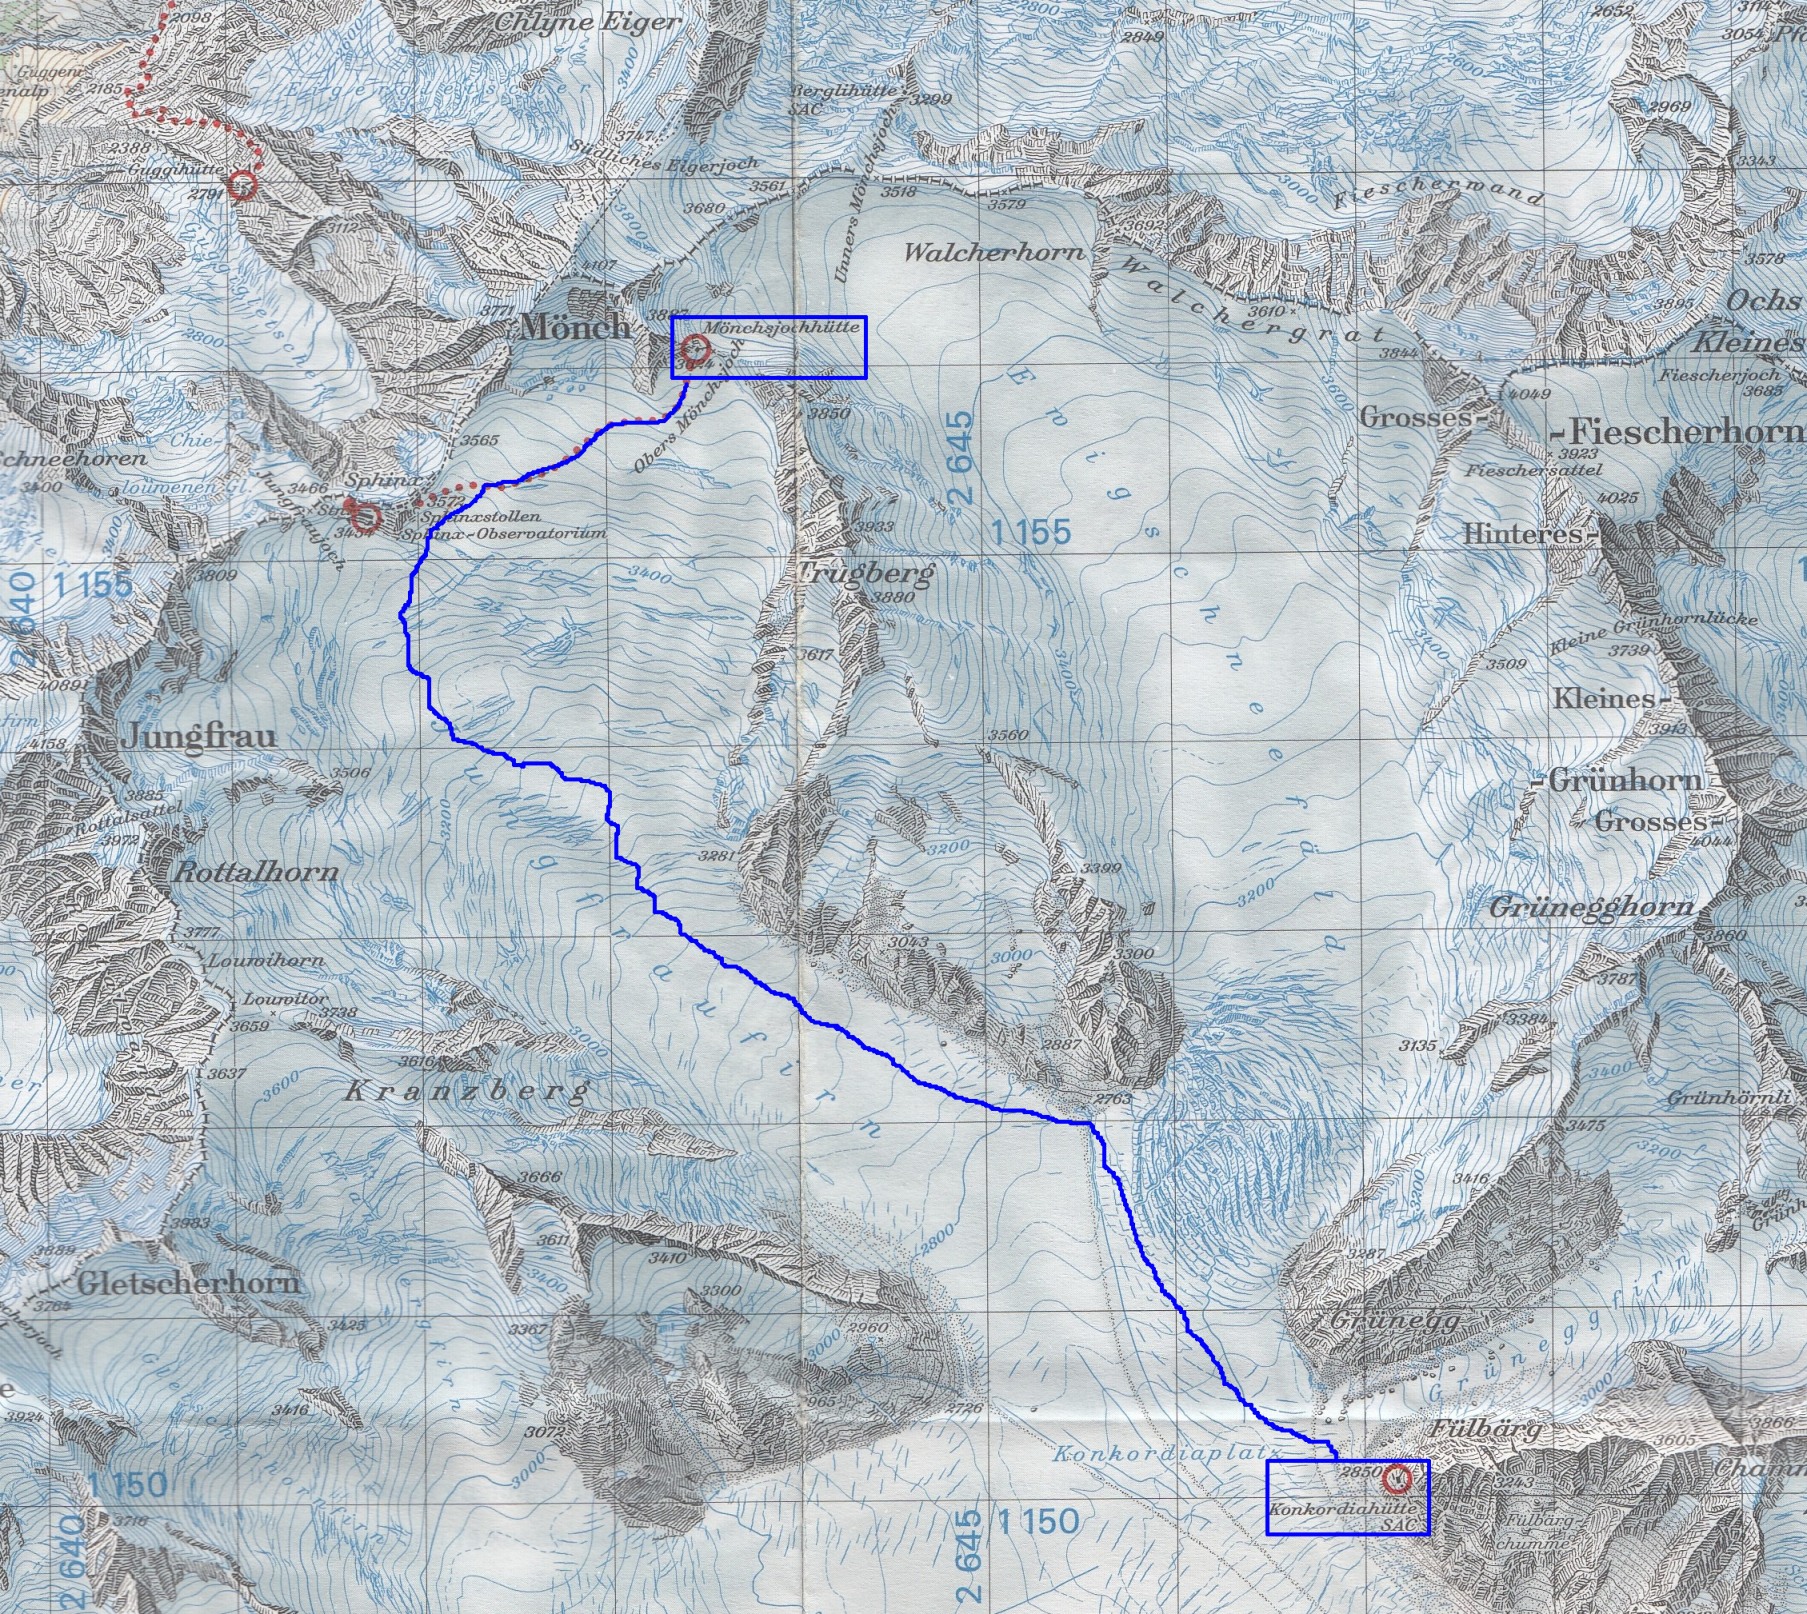 Croquis del recorrido entre el Refugio de Konkordia y el Refugio de Mönchjoch, por todo el Glaciar Aletsch y acercándonos al Jungfraujoch